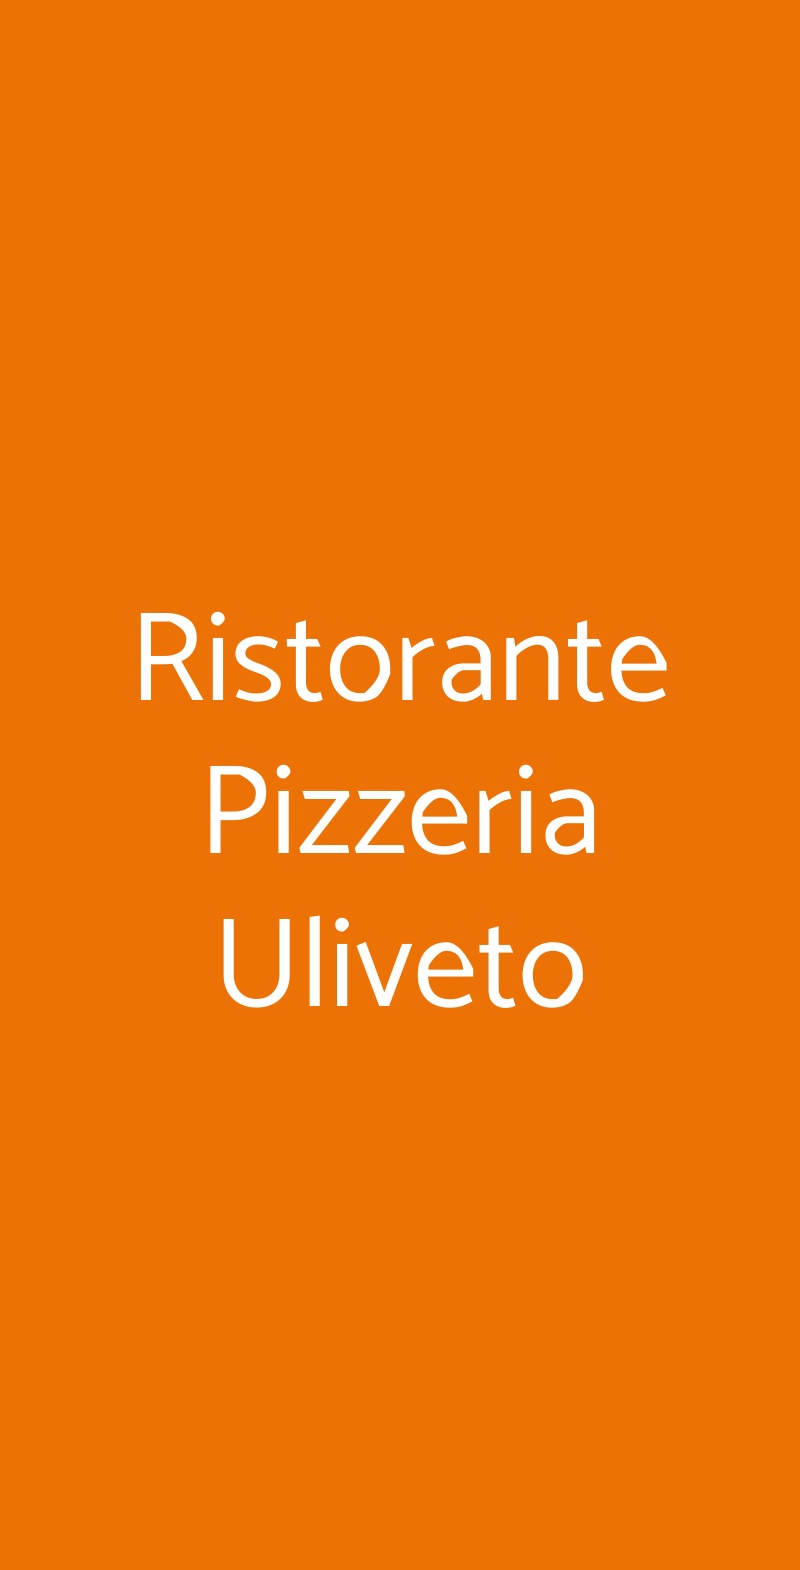 Ristorante Pizzeria Uliveto Massa menù 1 pagina